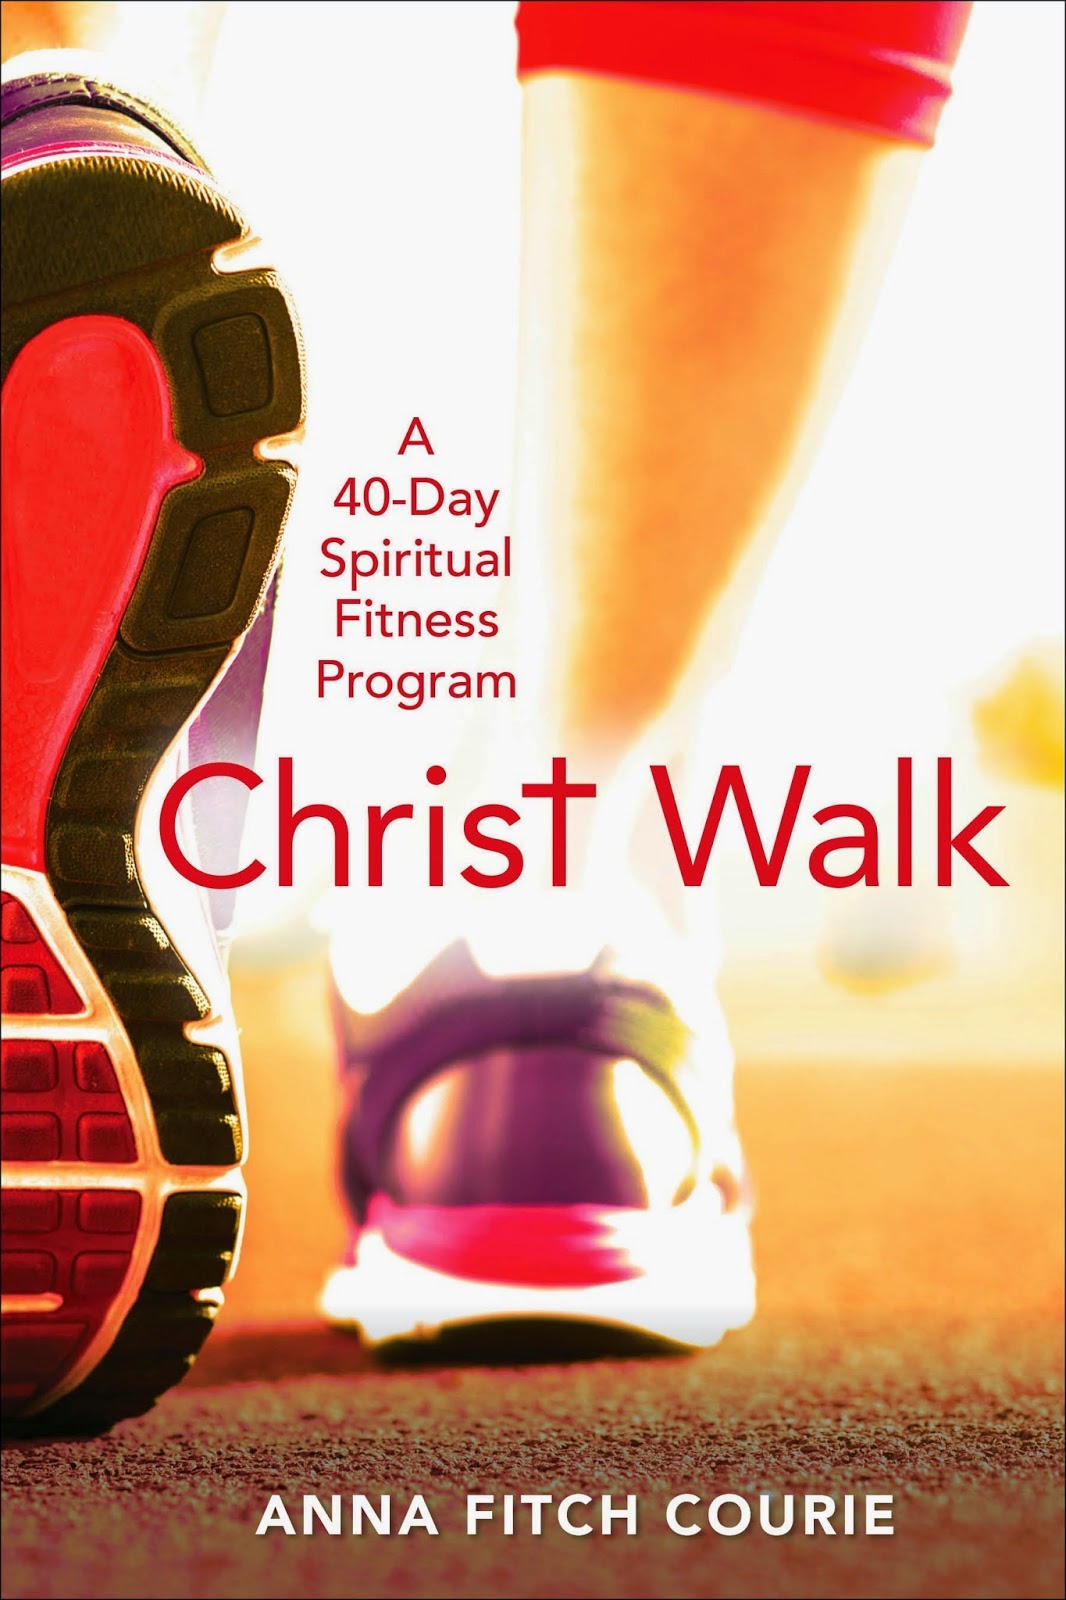 Buy The Christ Walk Program Here!